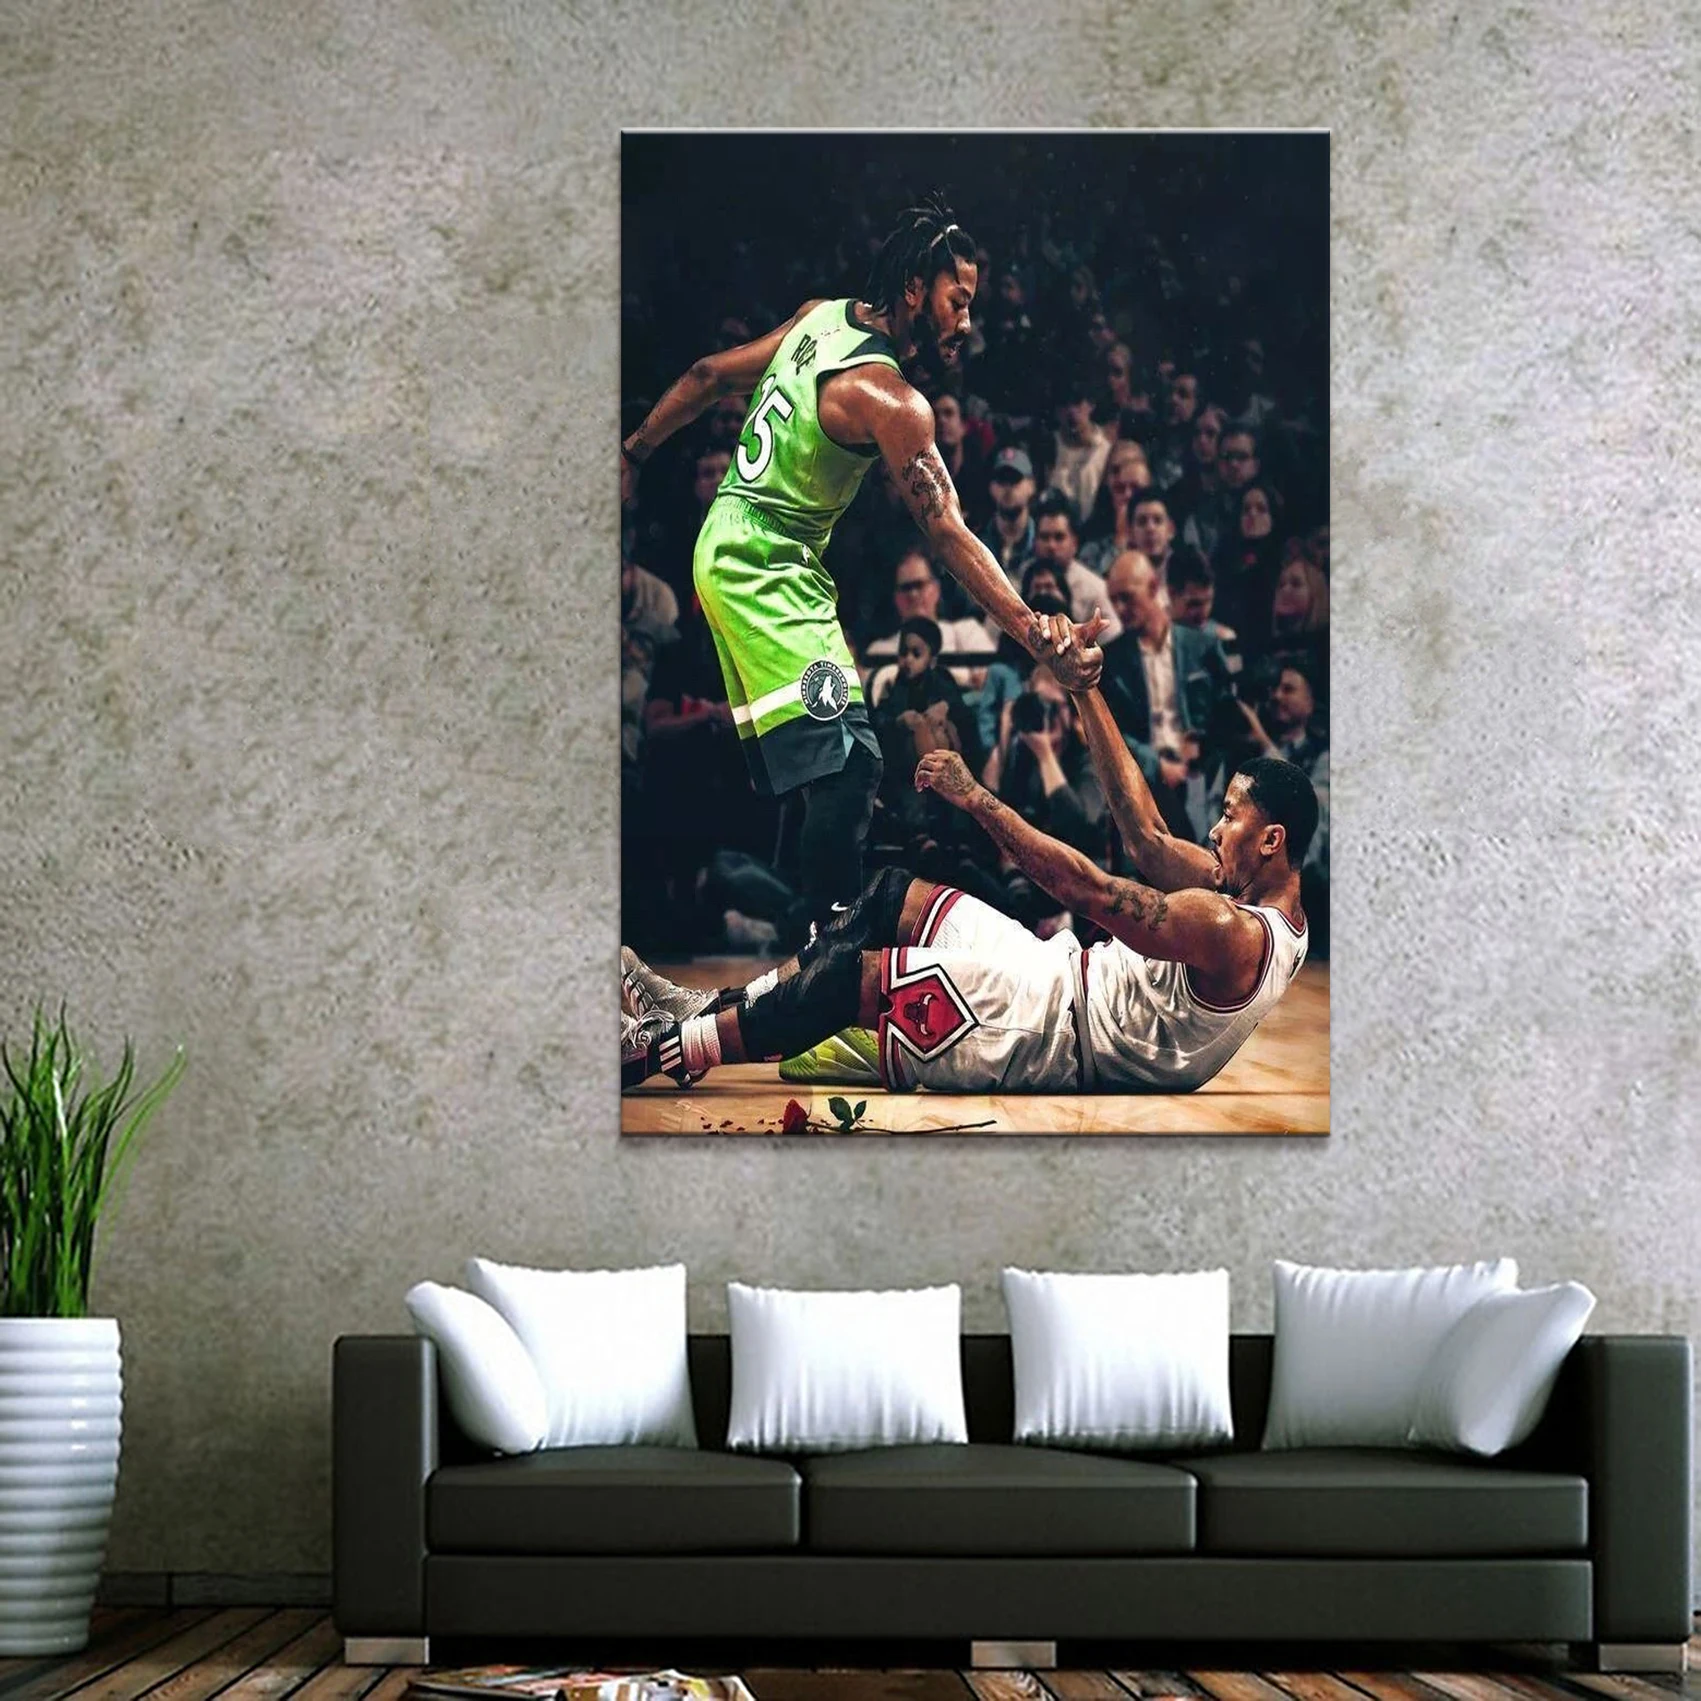 1 шт. декоративный Деррик Роза хороший баскетболист плакат фотографии пейзаж стены для гостиной Декор холст